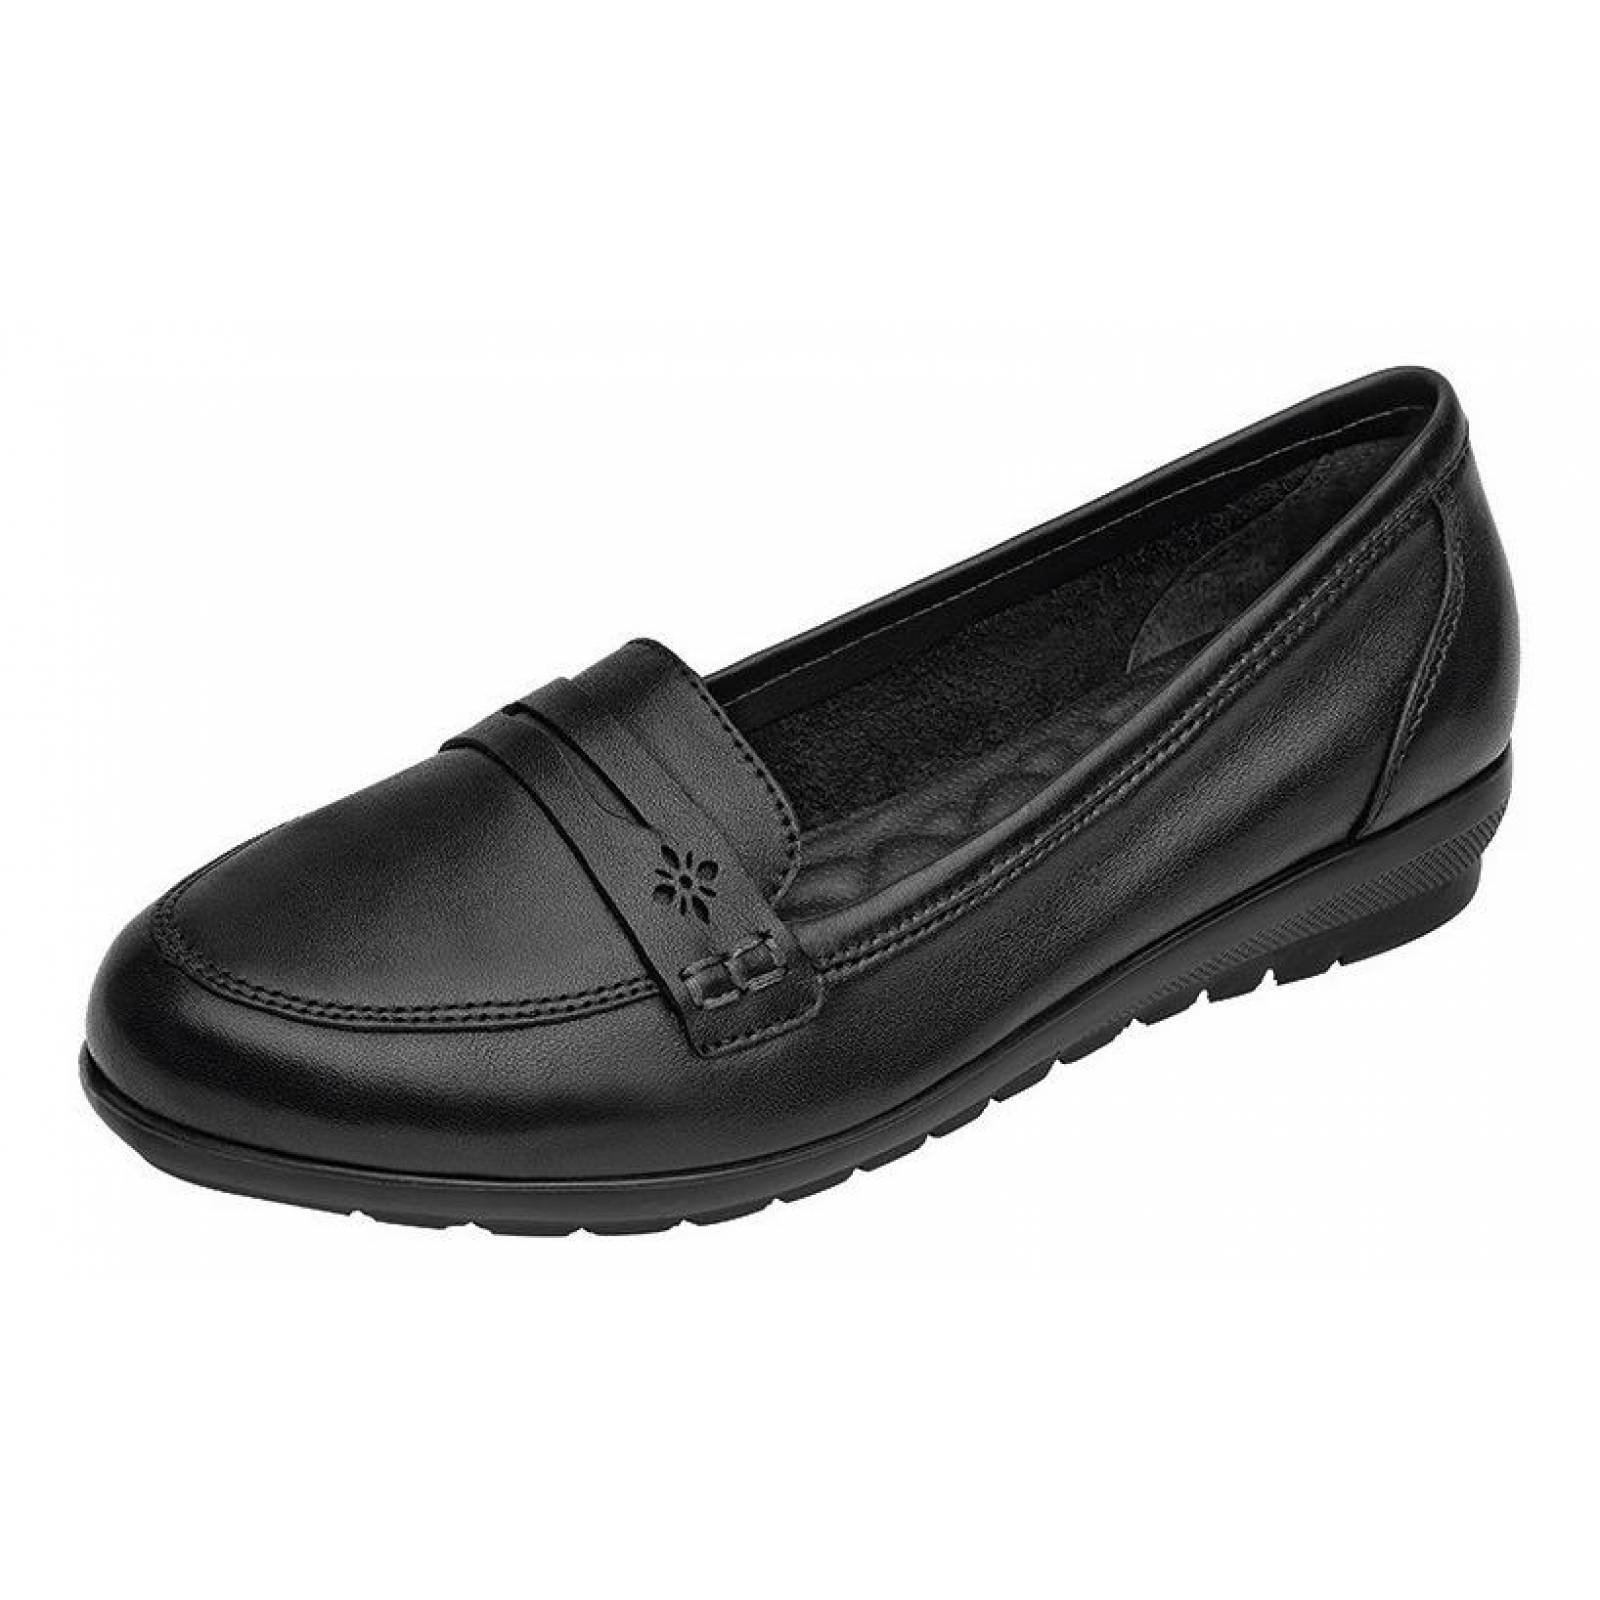 Calzado Dama Mujer Zapato Flexi Confort En Piel Negro Cómodo 